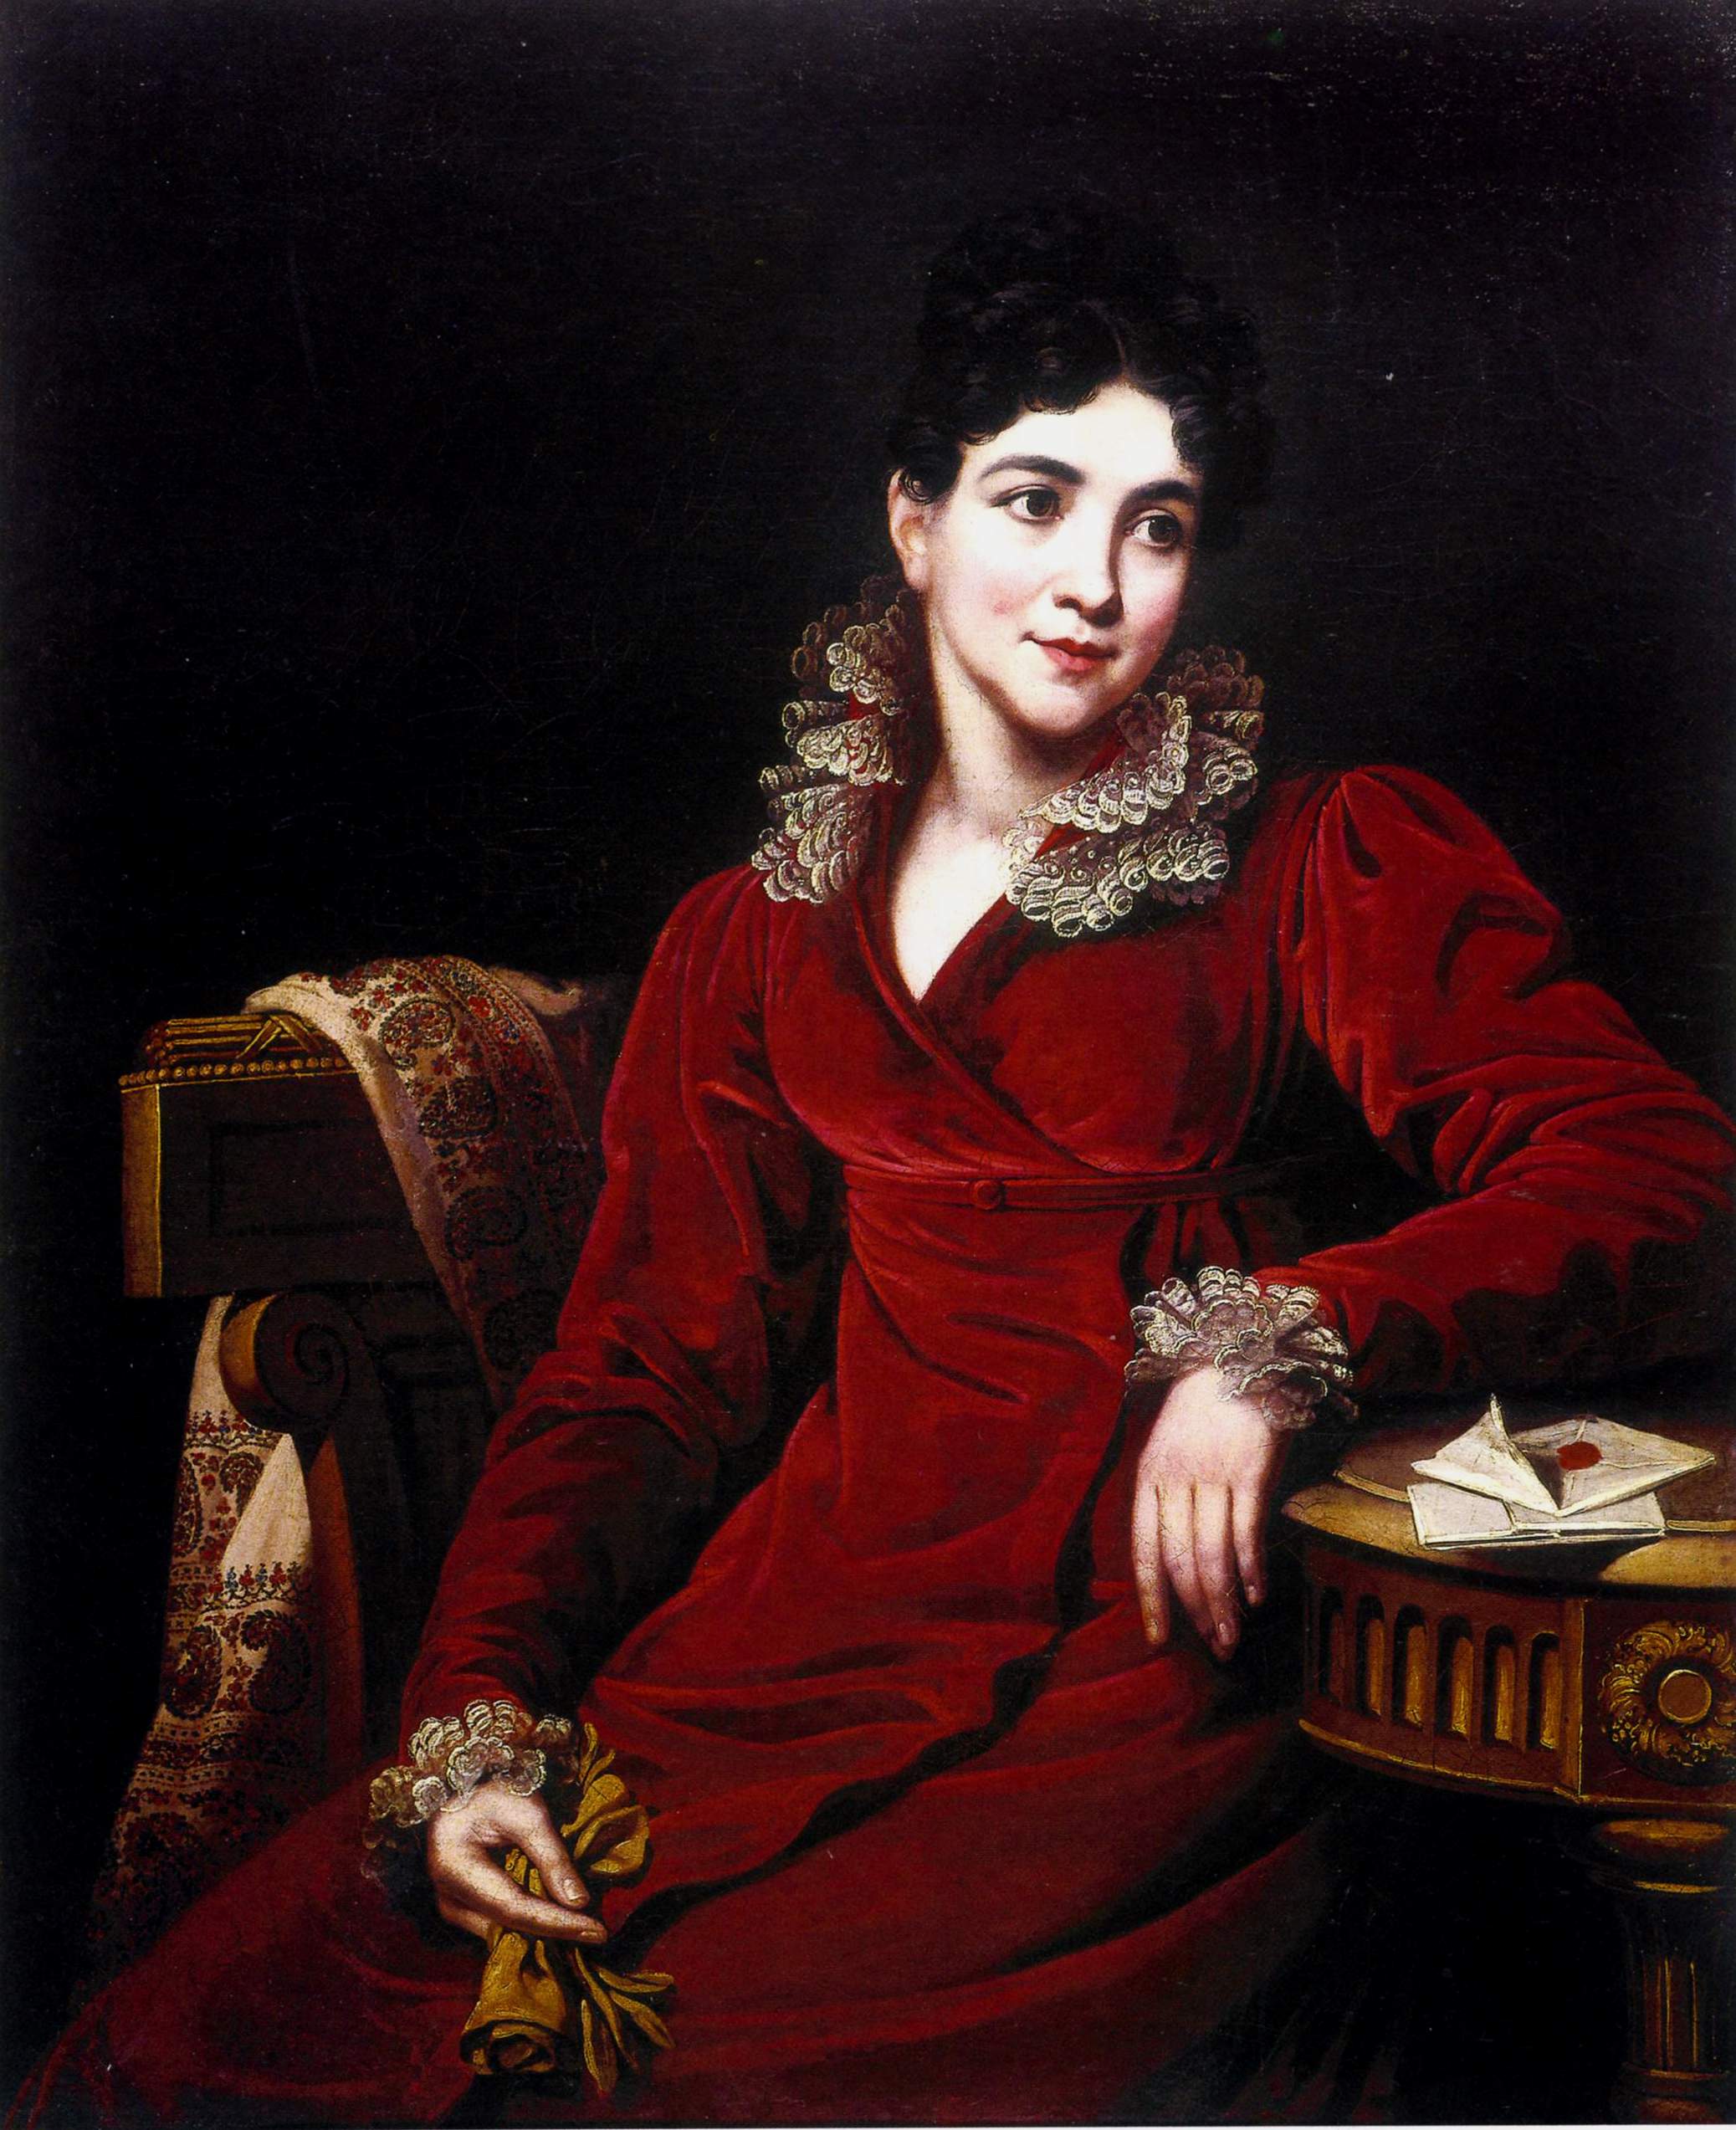 Ромбауэр. Портрет графини П.П. Кутайсовой. 1820 